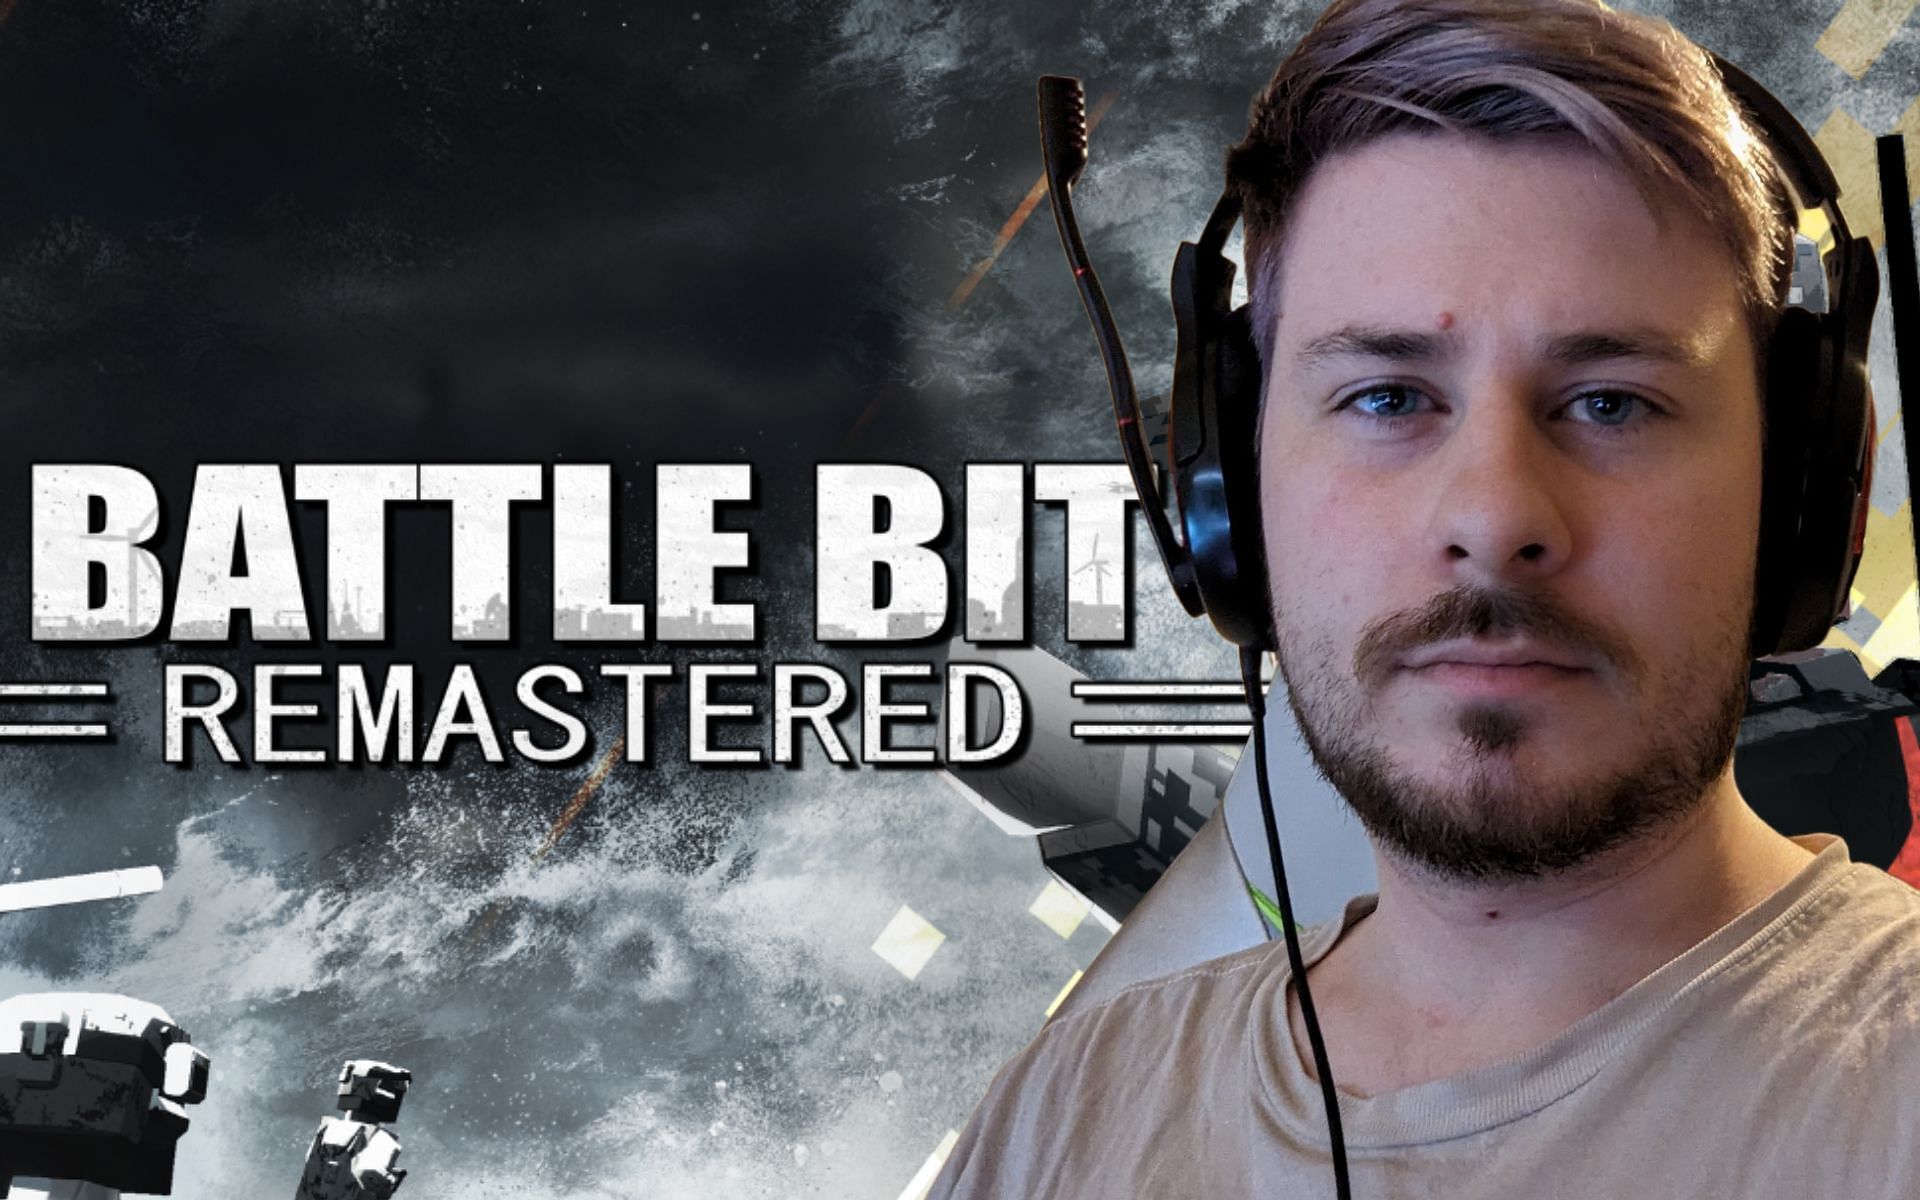 Bro is never playing BattleBit again #battlebit #battlebitremastered